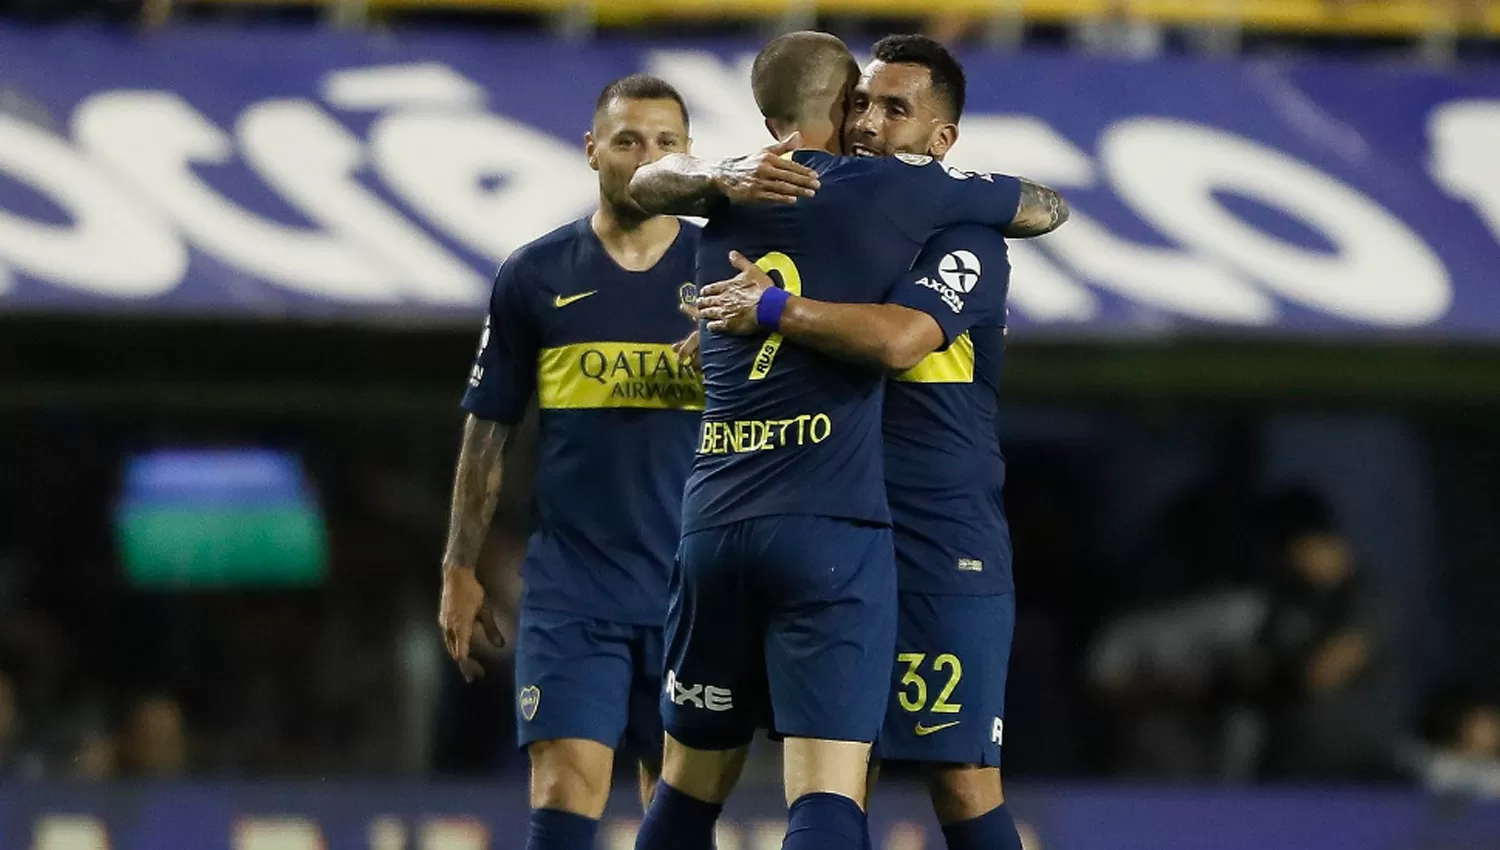 FELICES. Darío Benedetto felicita a Tevez luego de su primer gol.